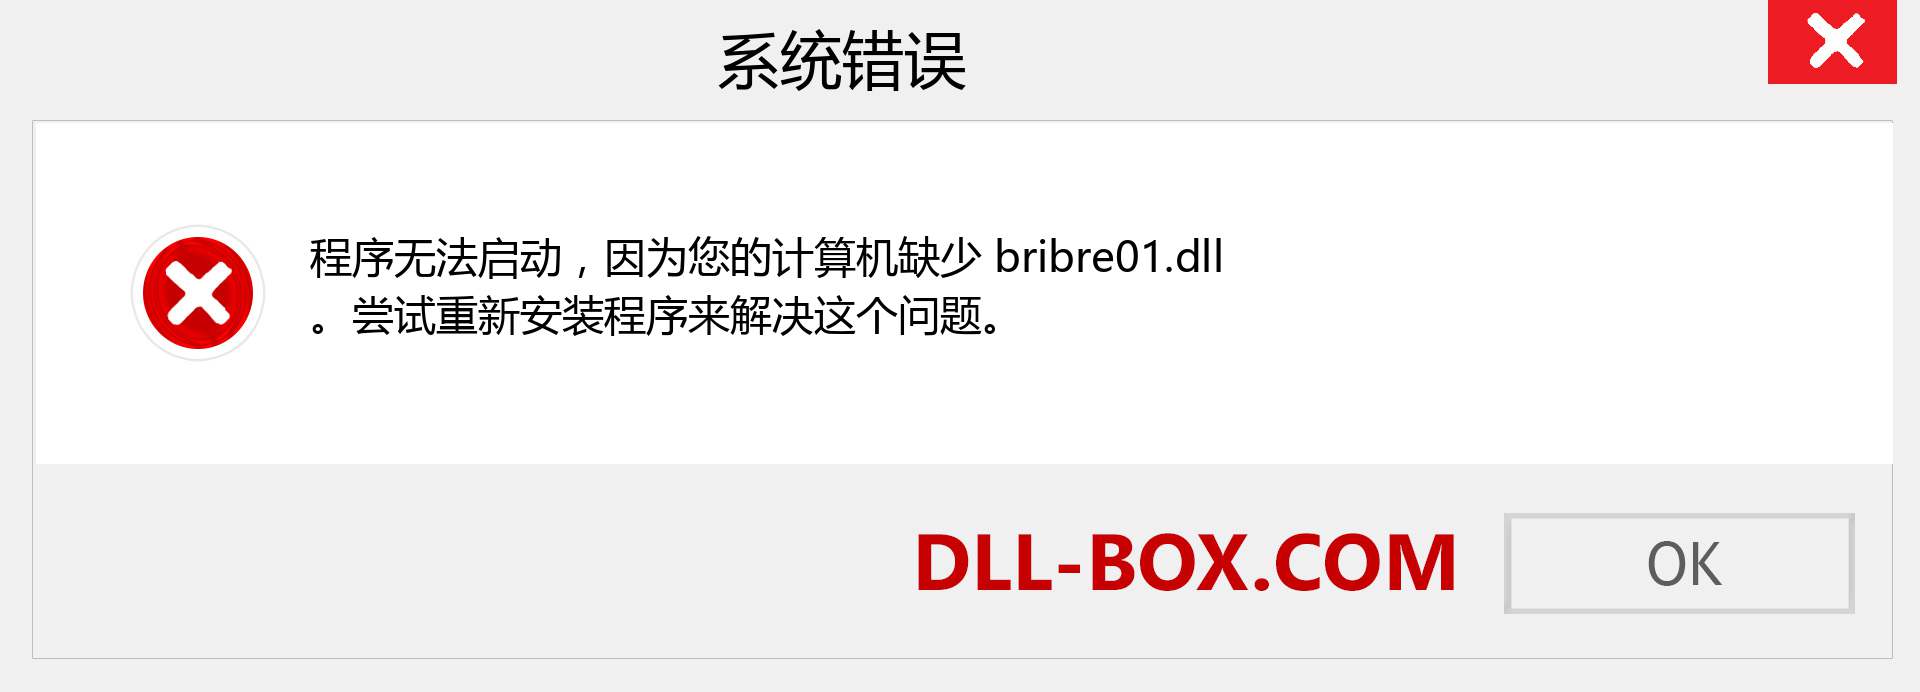 bribre01.dll 文件丢失？。 适用于 Windows 7、8、10 的下载 - 修复 Windows、照片、图像上的 bribre01 dll 丢失错误